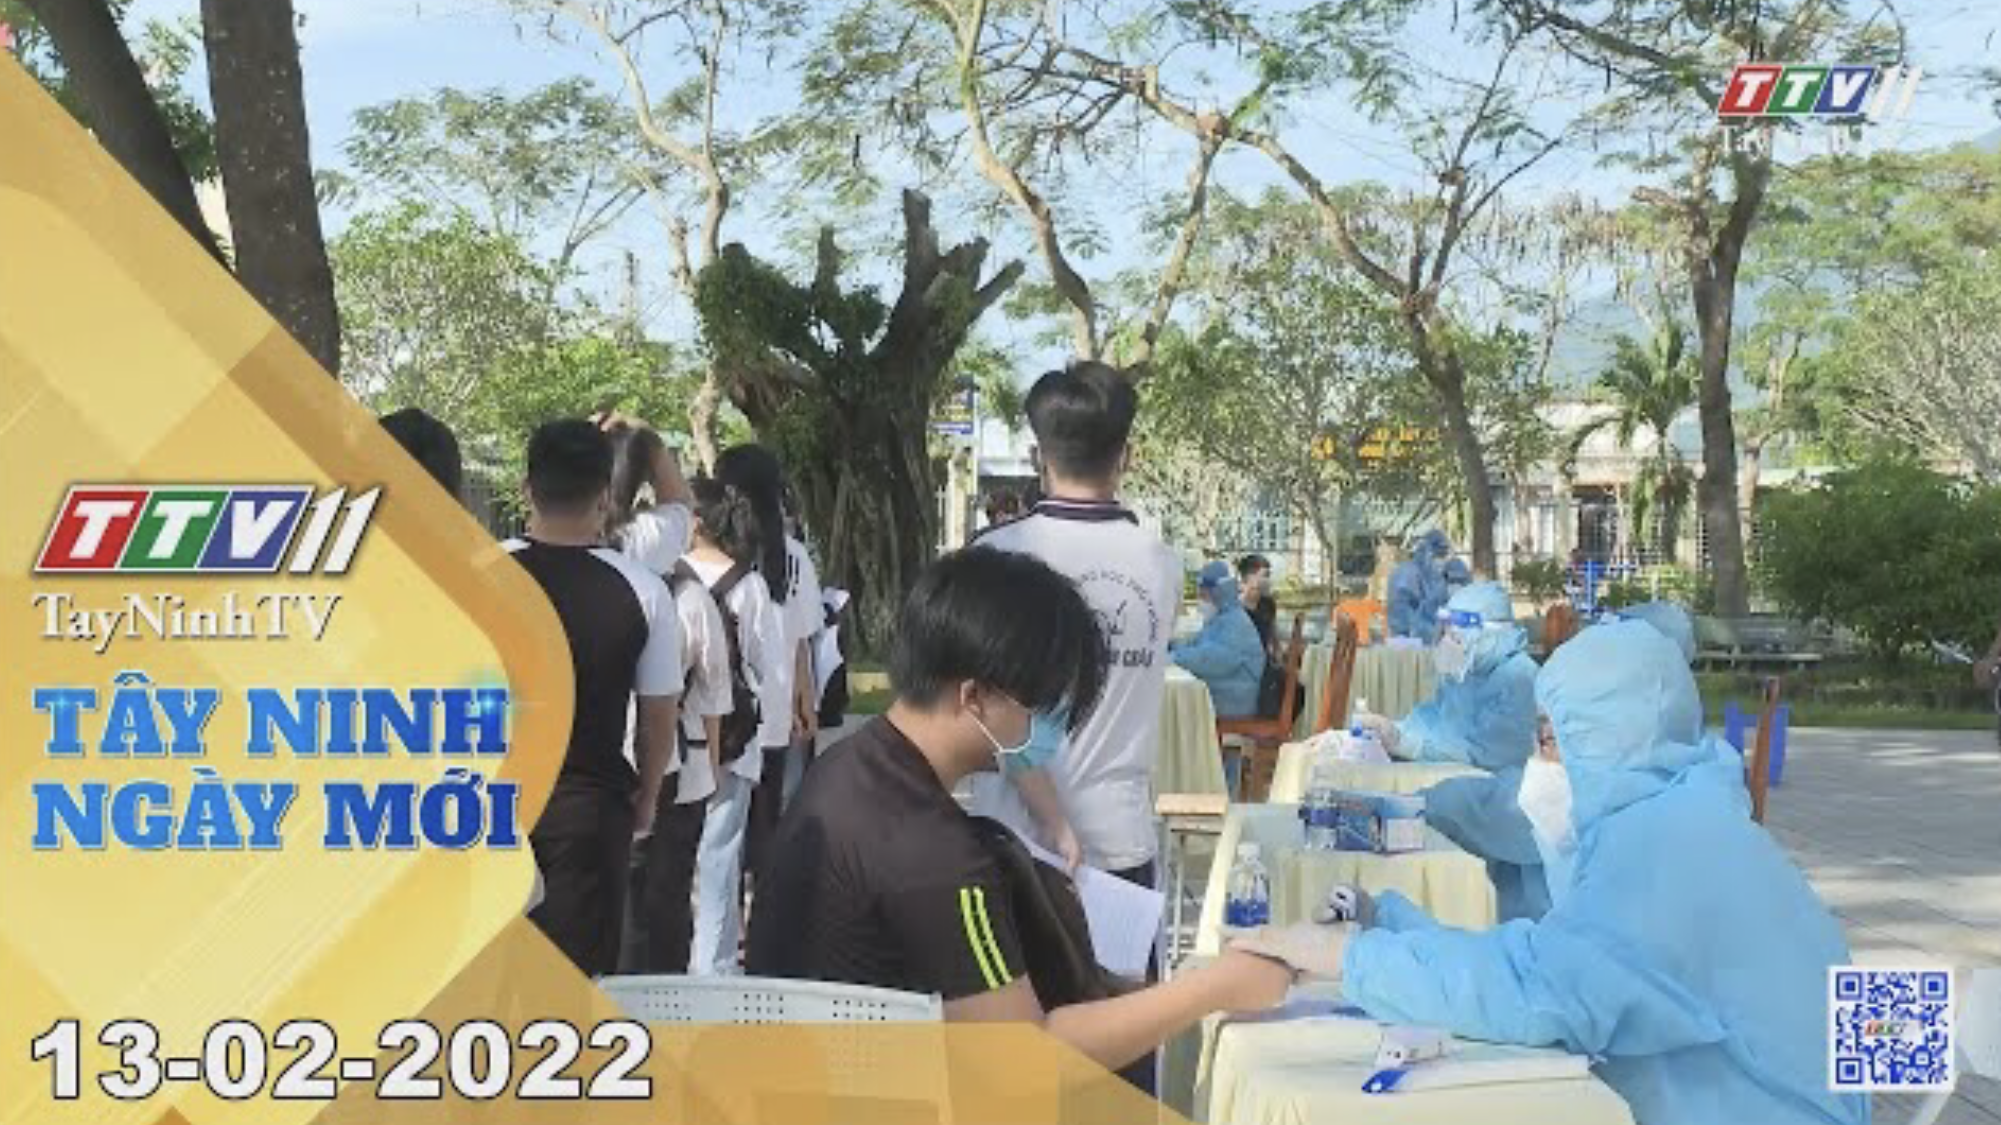 Tây Ninh ngày mới 13-02-2022 | Tin tức hôm nay | TayNinhTV